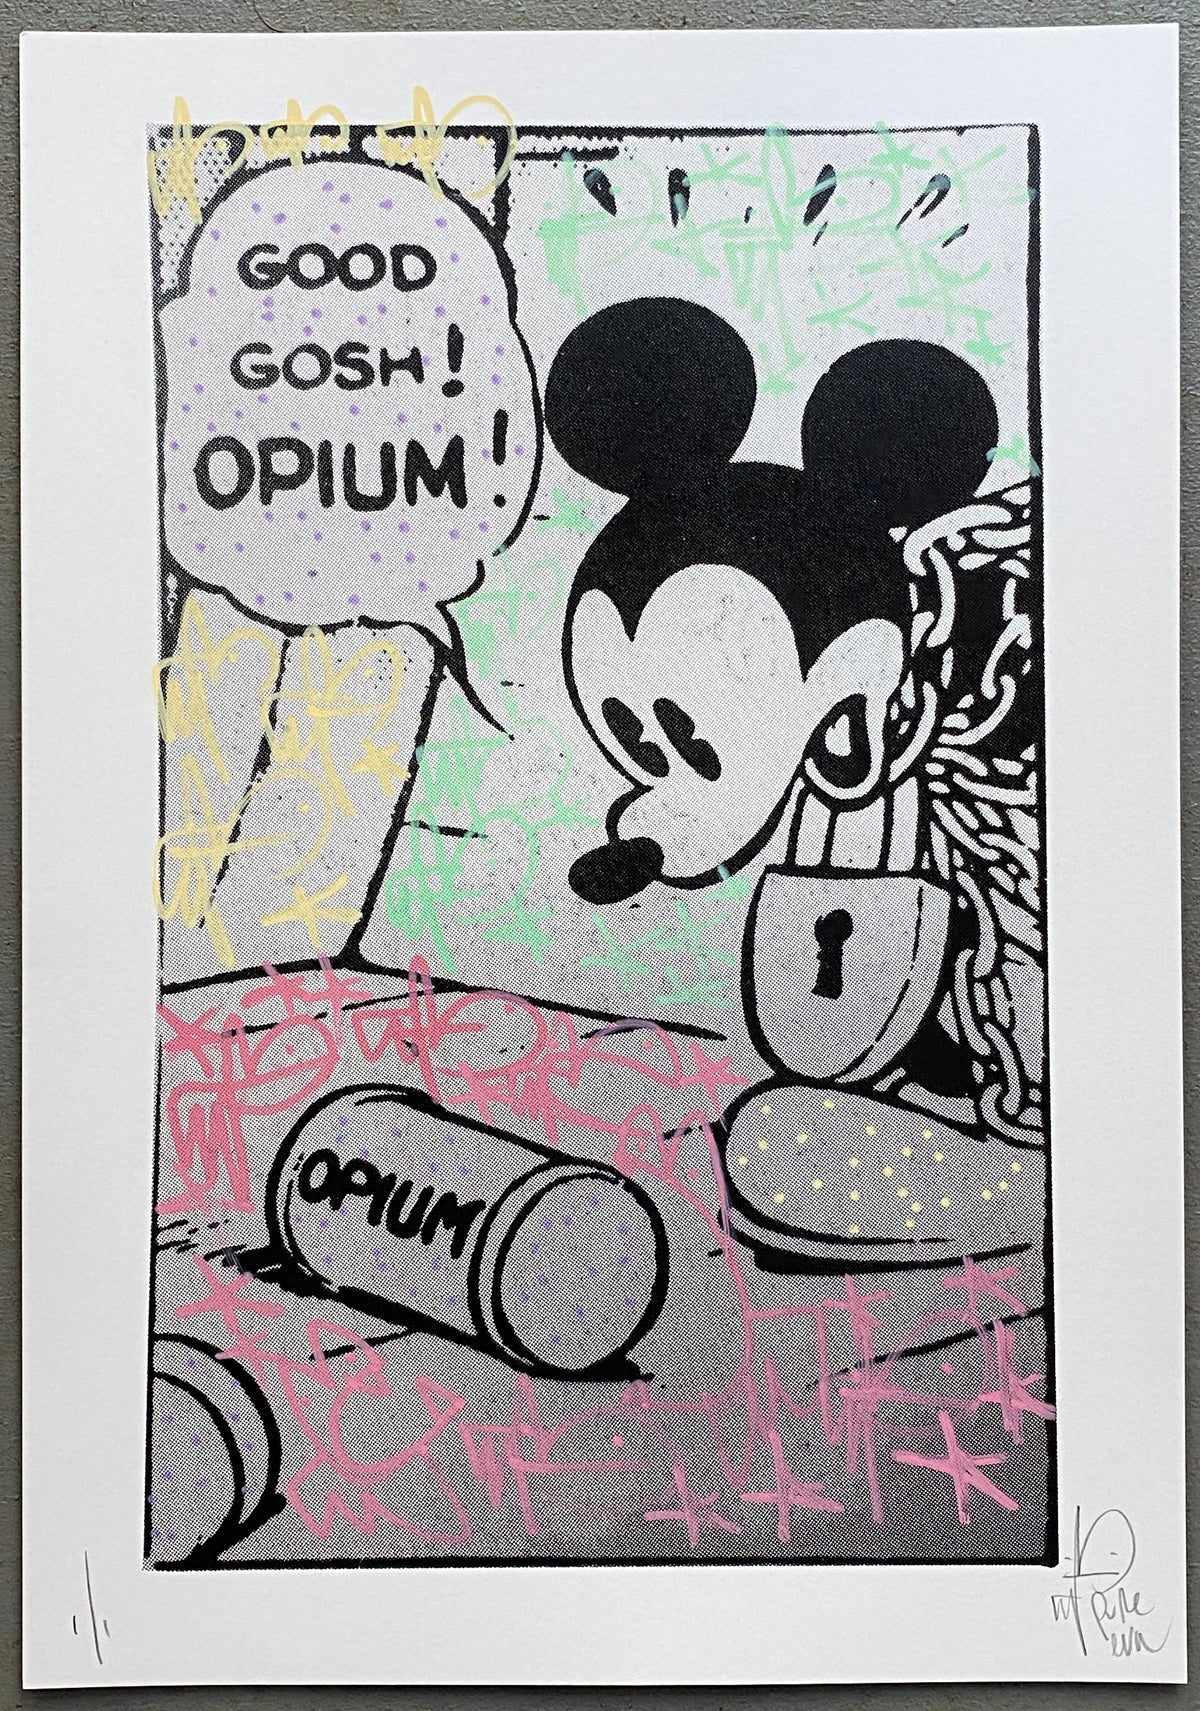 Opiummmmmmm